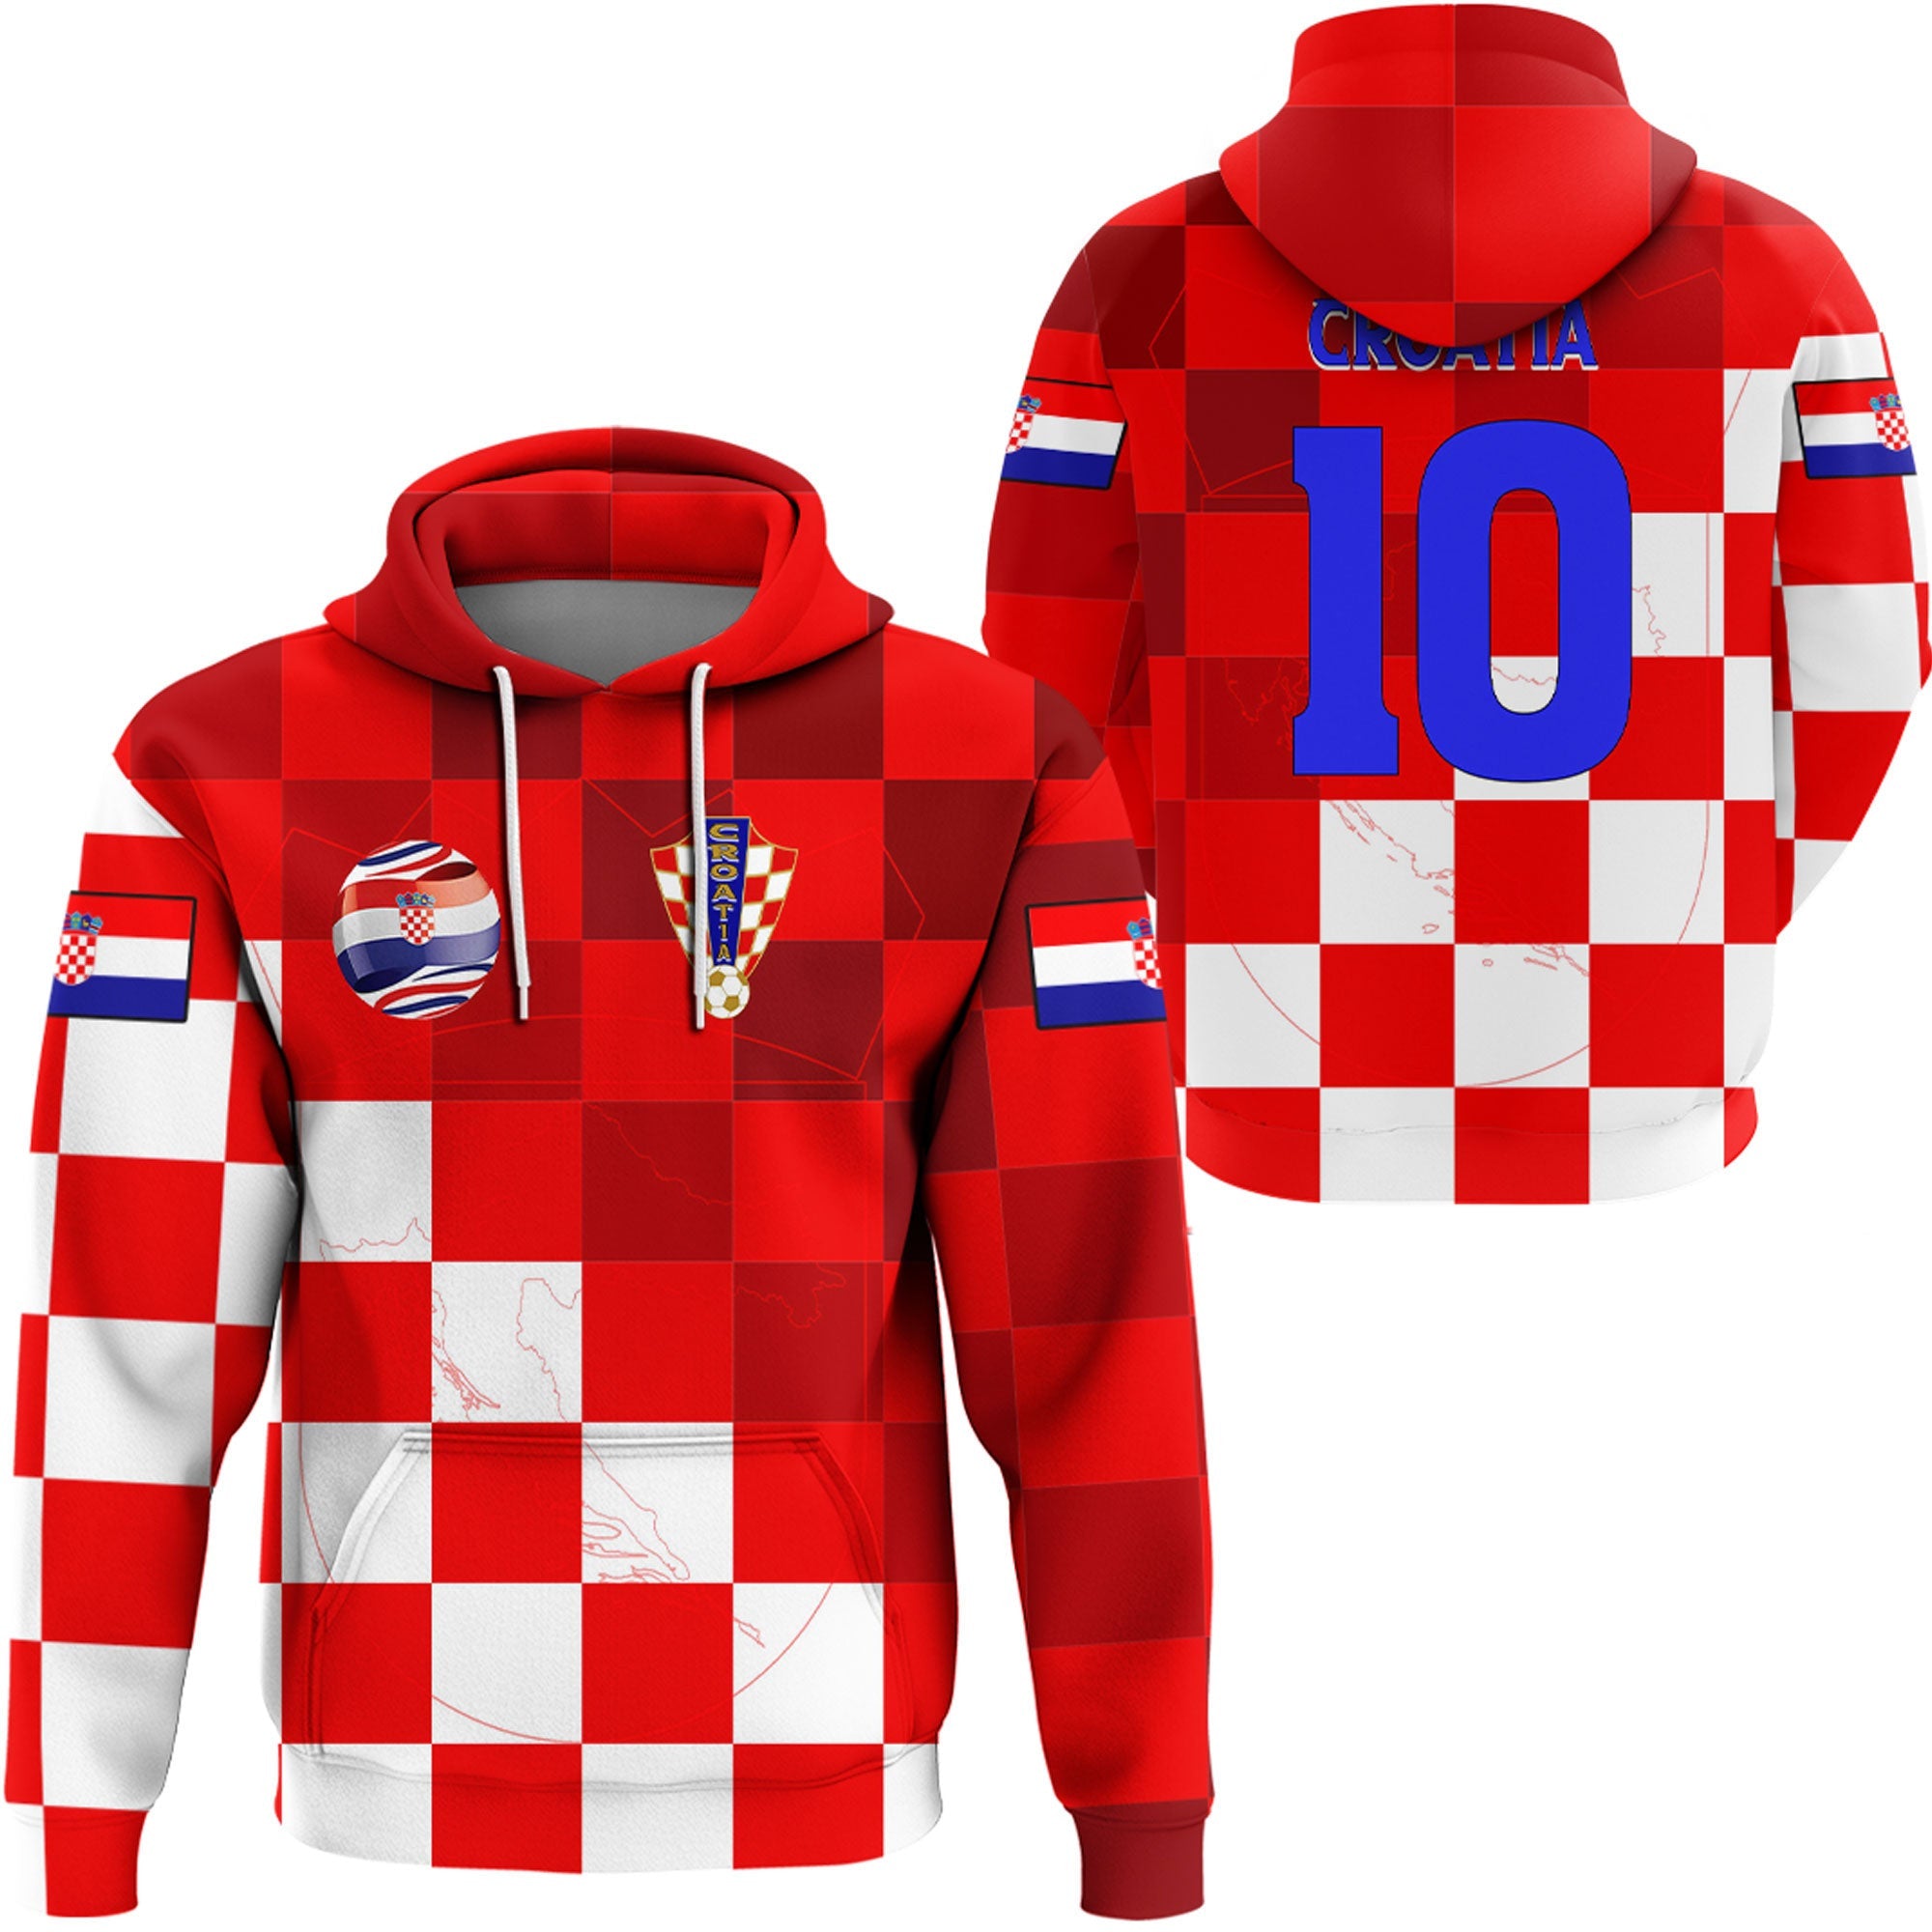 croatia-soccer-style-hoodie